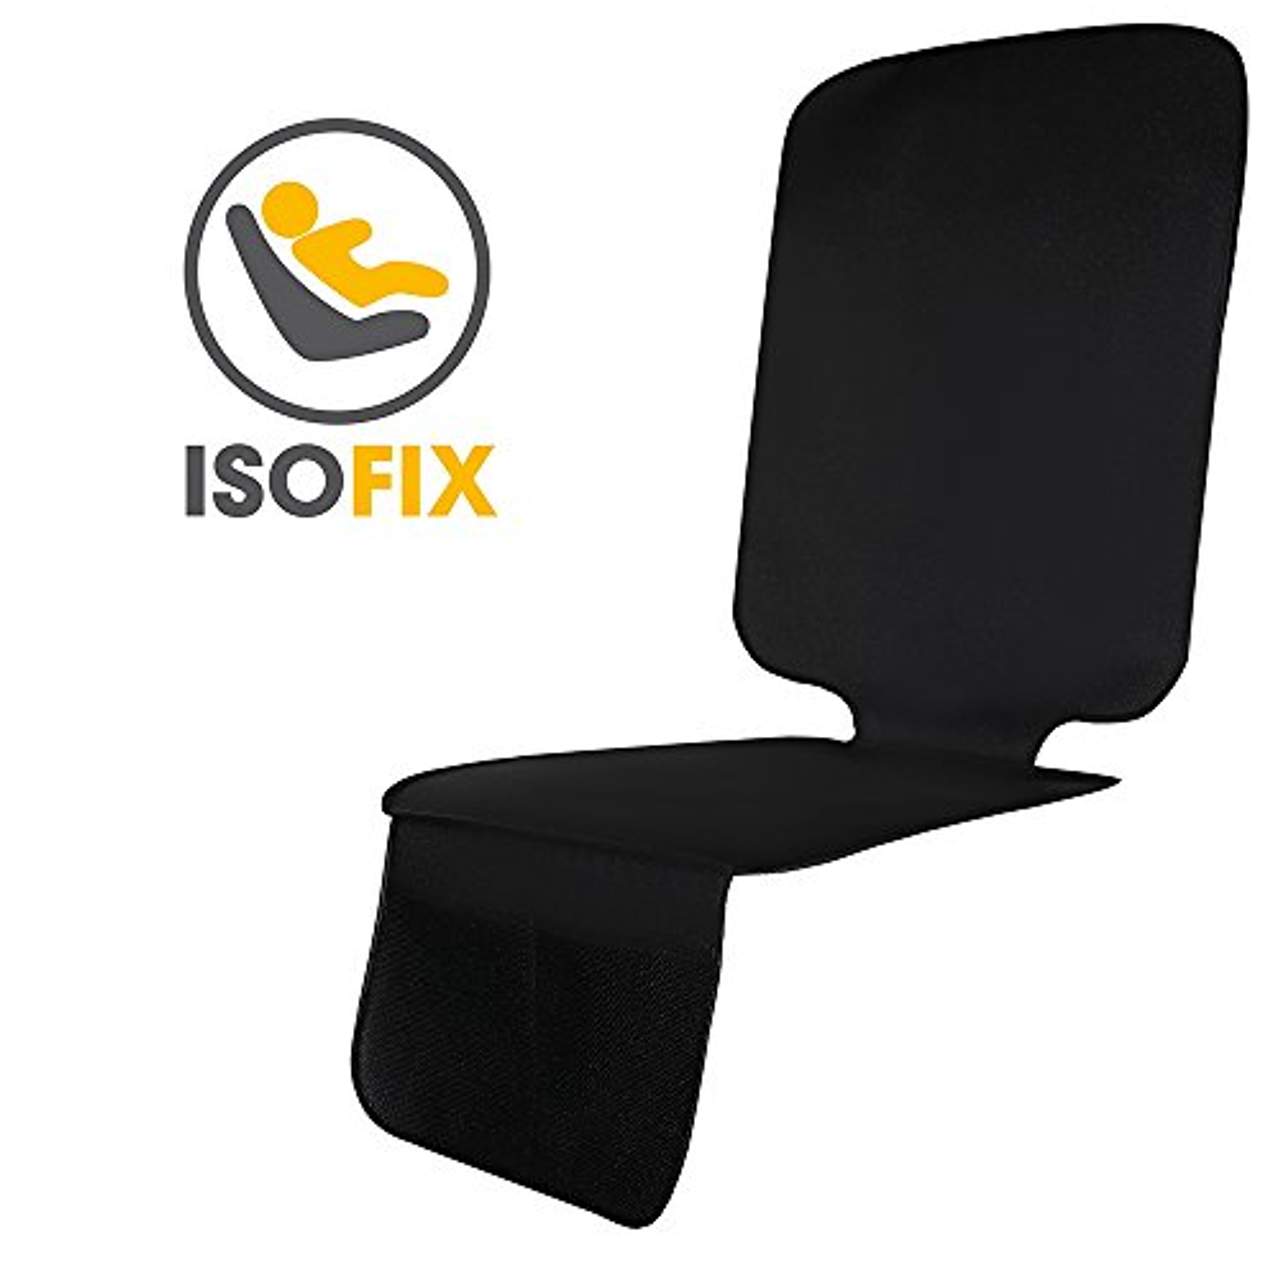 Kindersitzunterlage Autositzauflage Sitzschoner Isofix geeignet Universell 6299